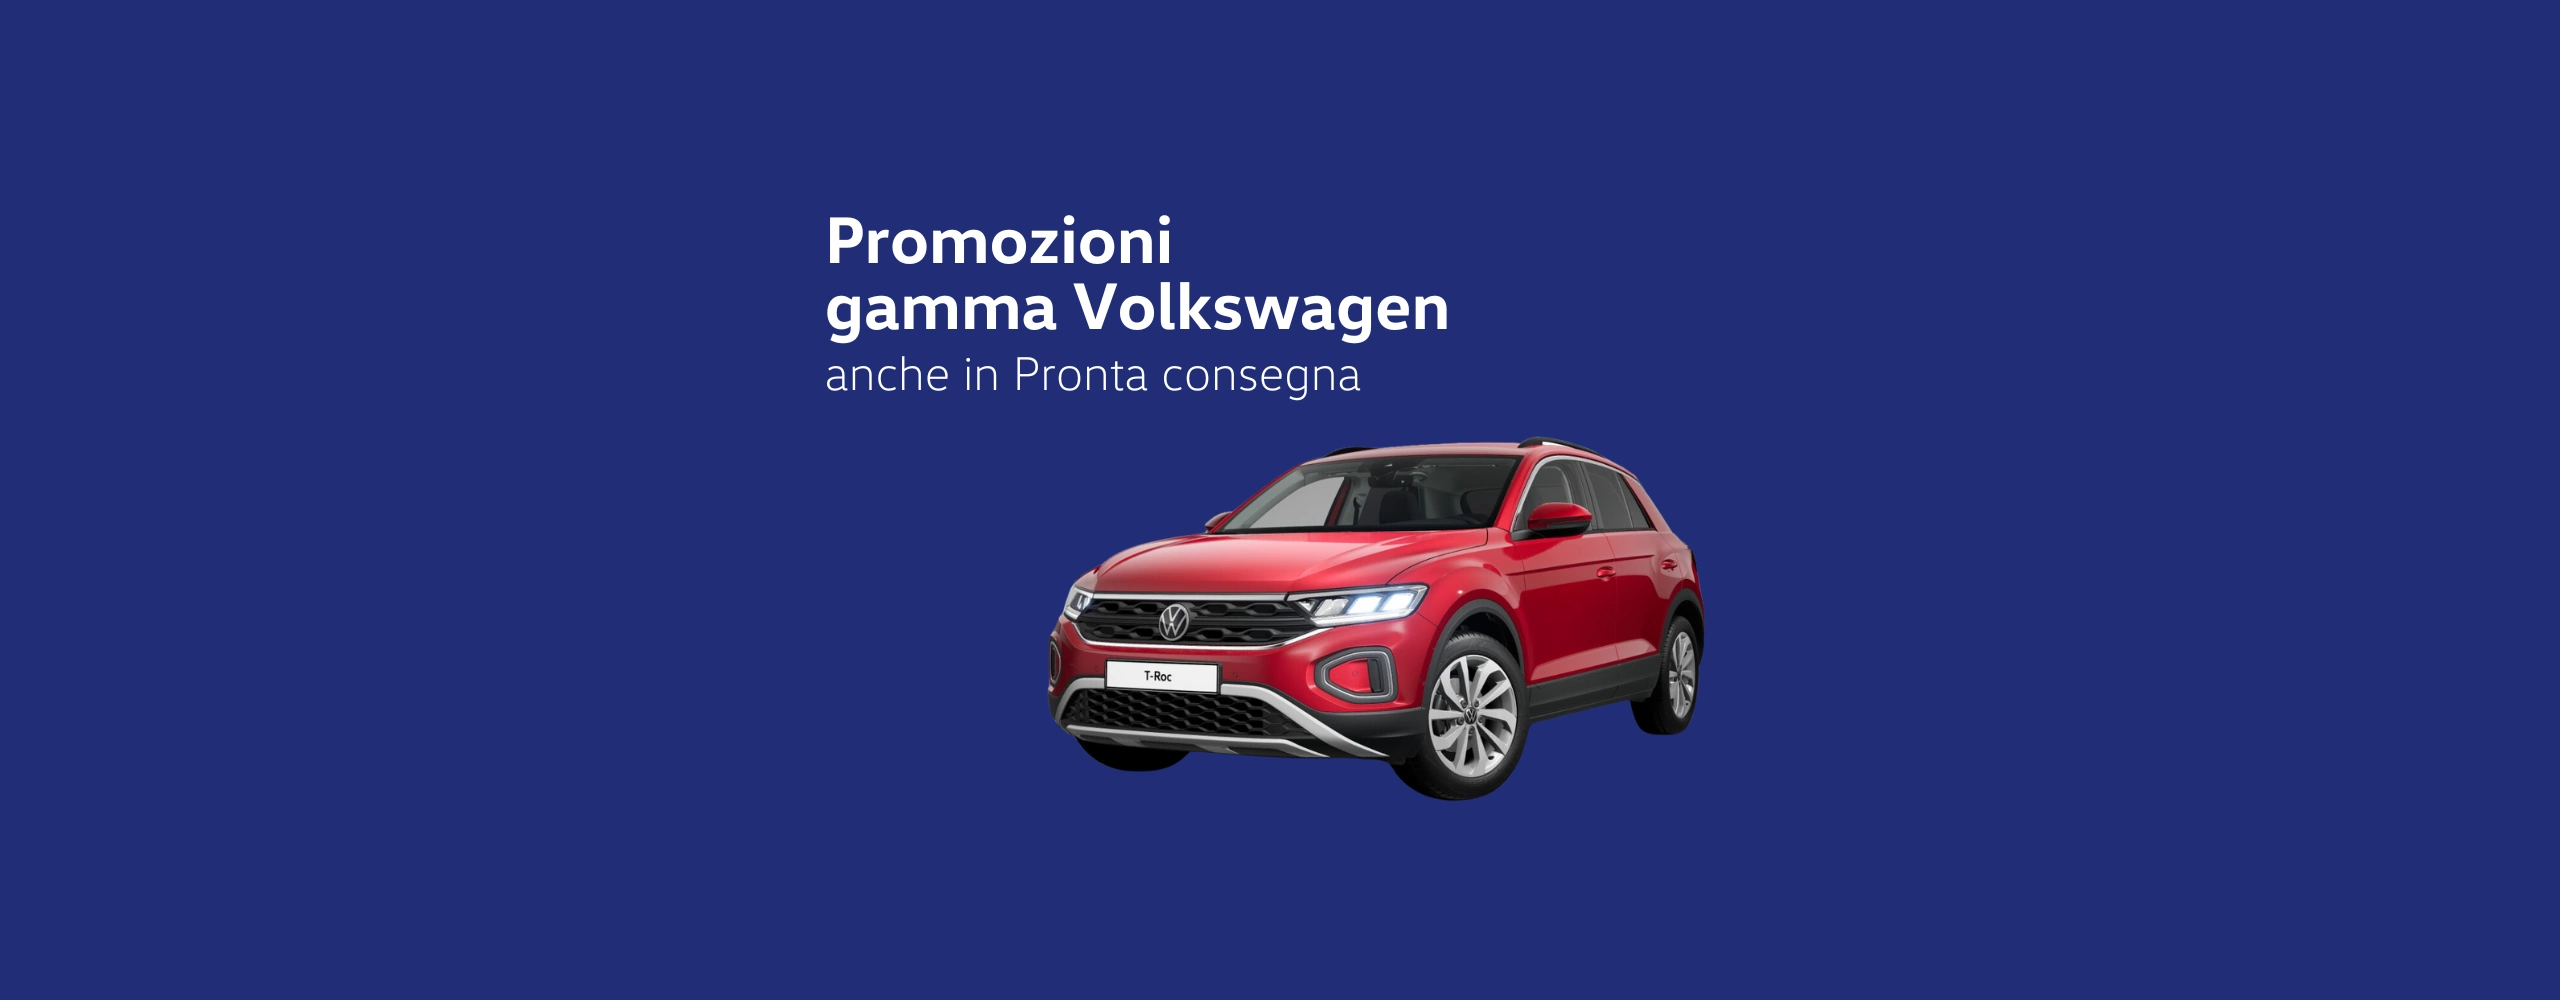 Promozioni Volkswagen